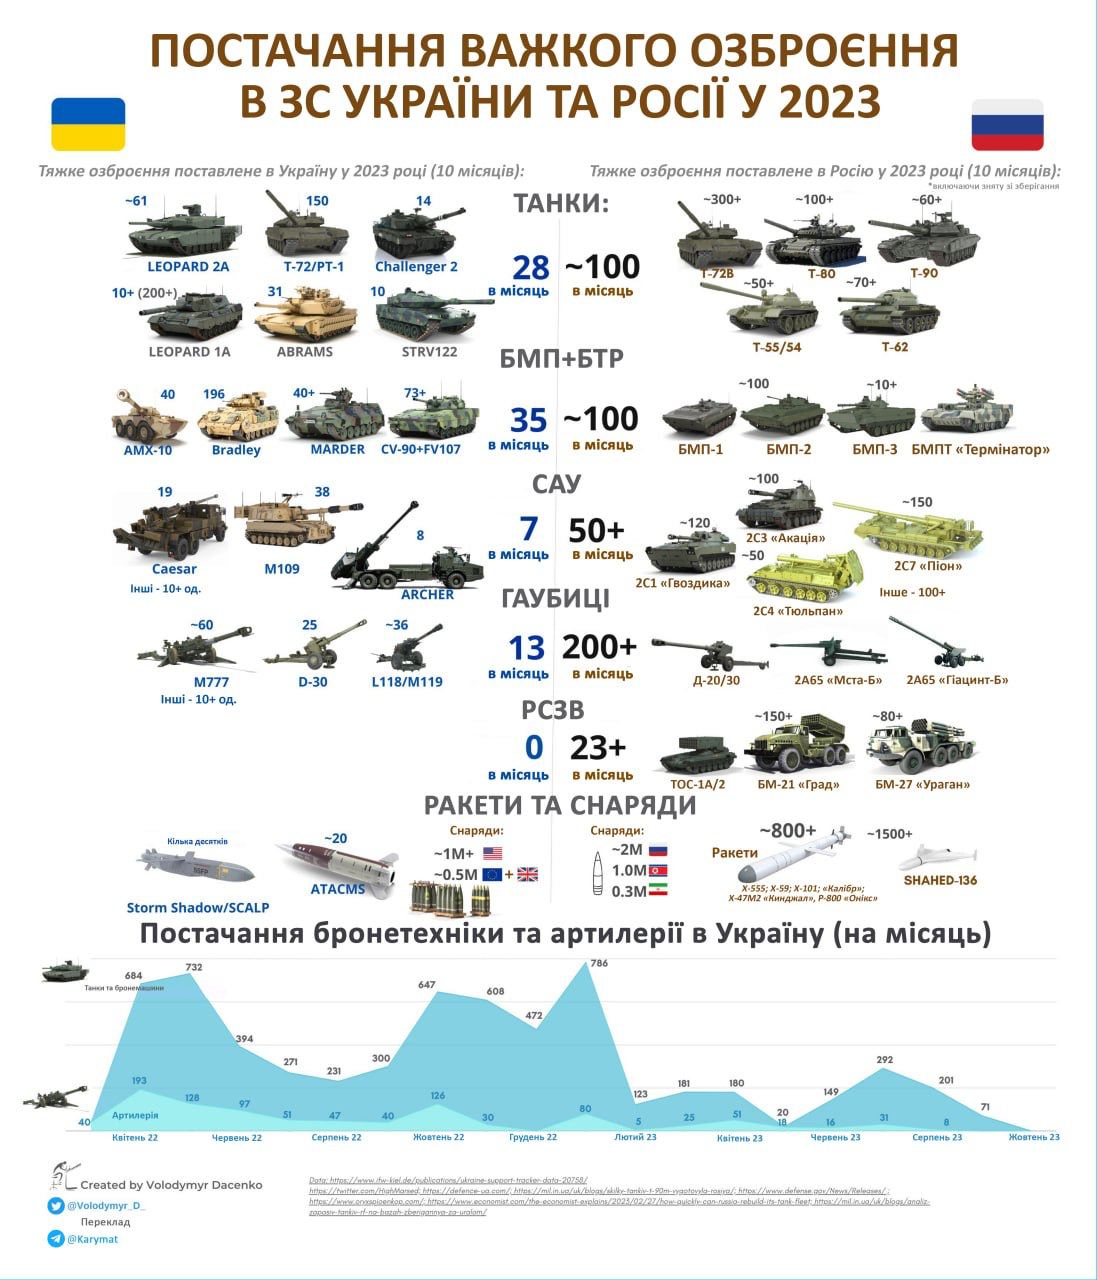 Сравнительная инфографика поставок тяжелого вооружения в ВС Украины и россии в течение 2023 года